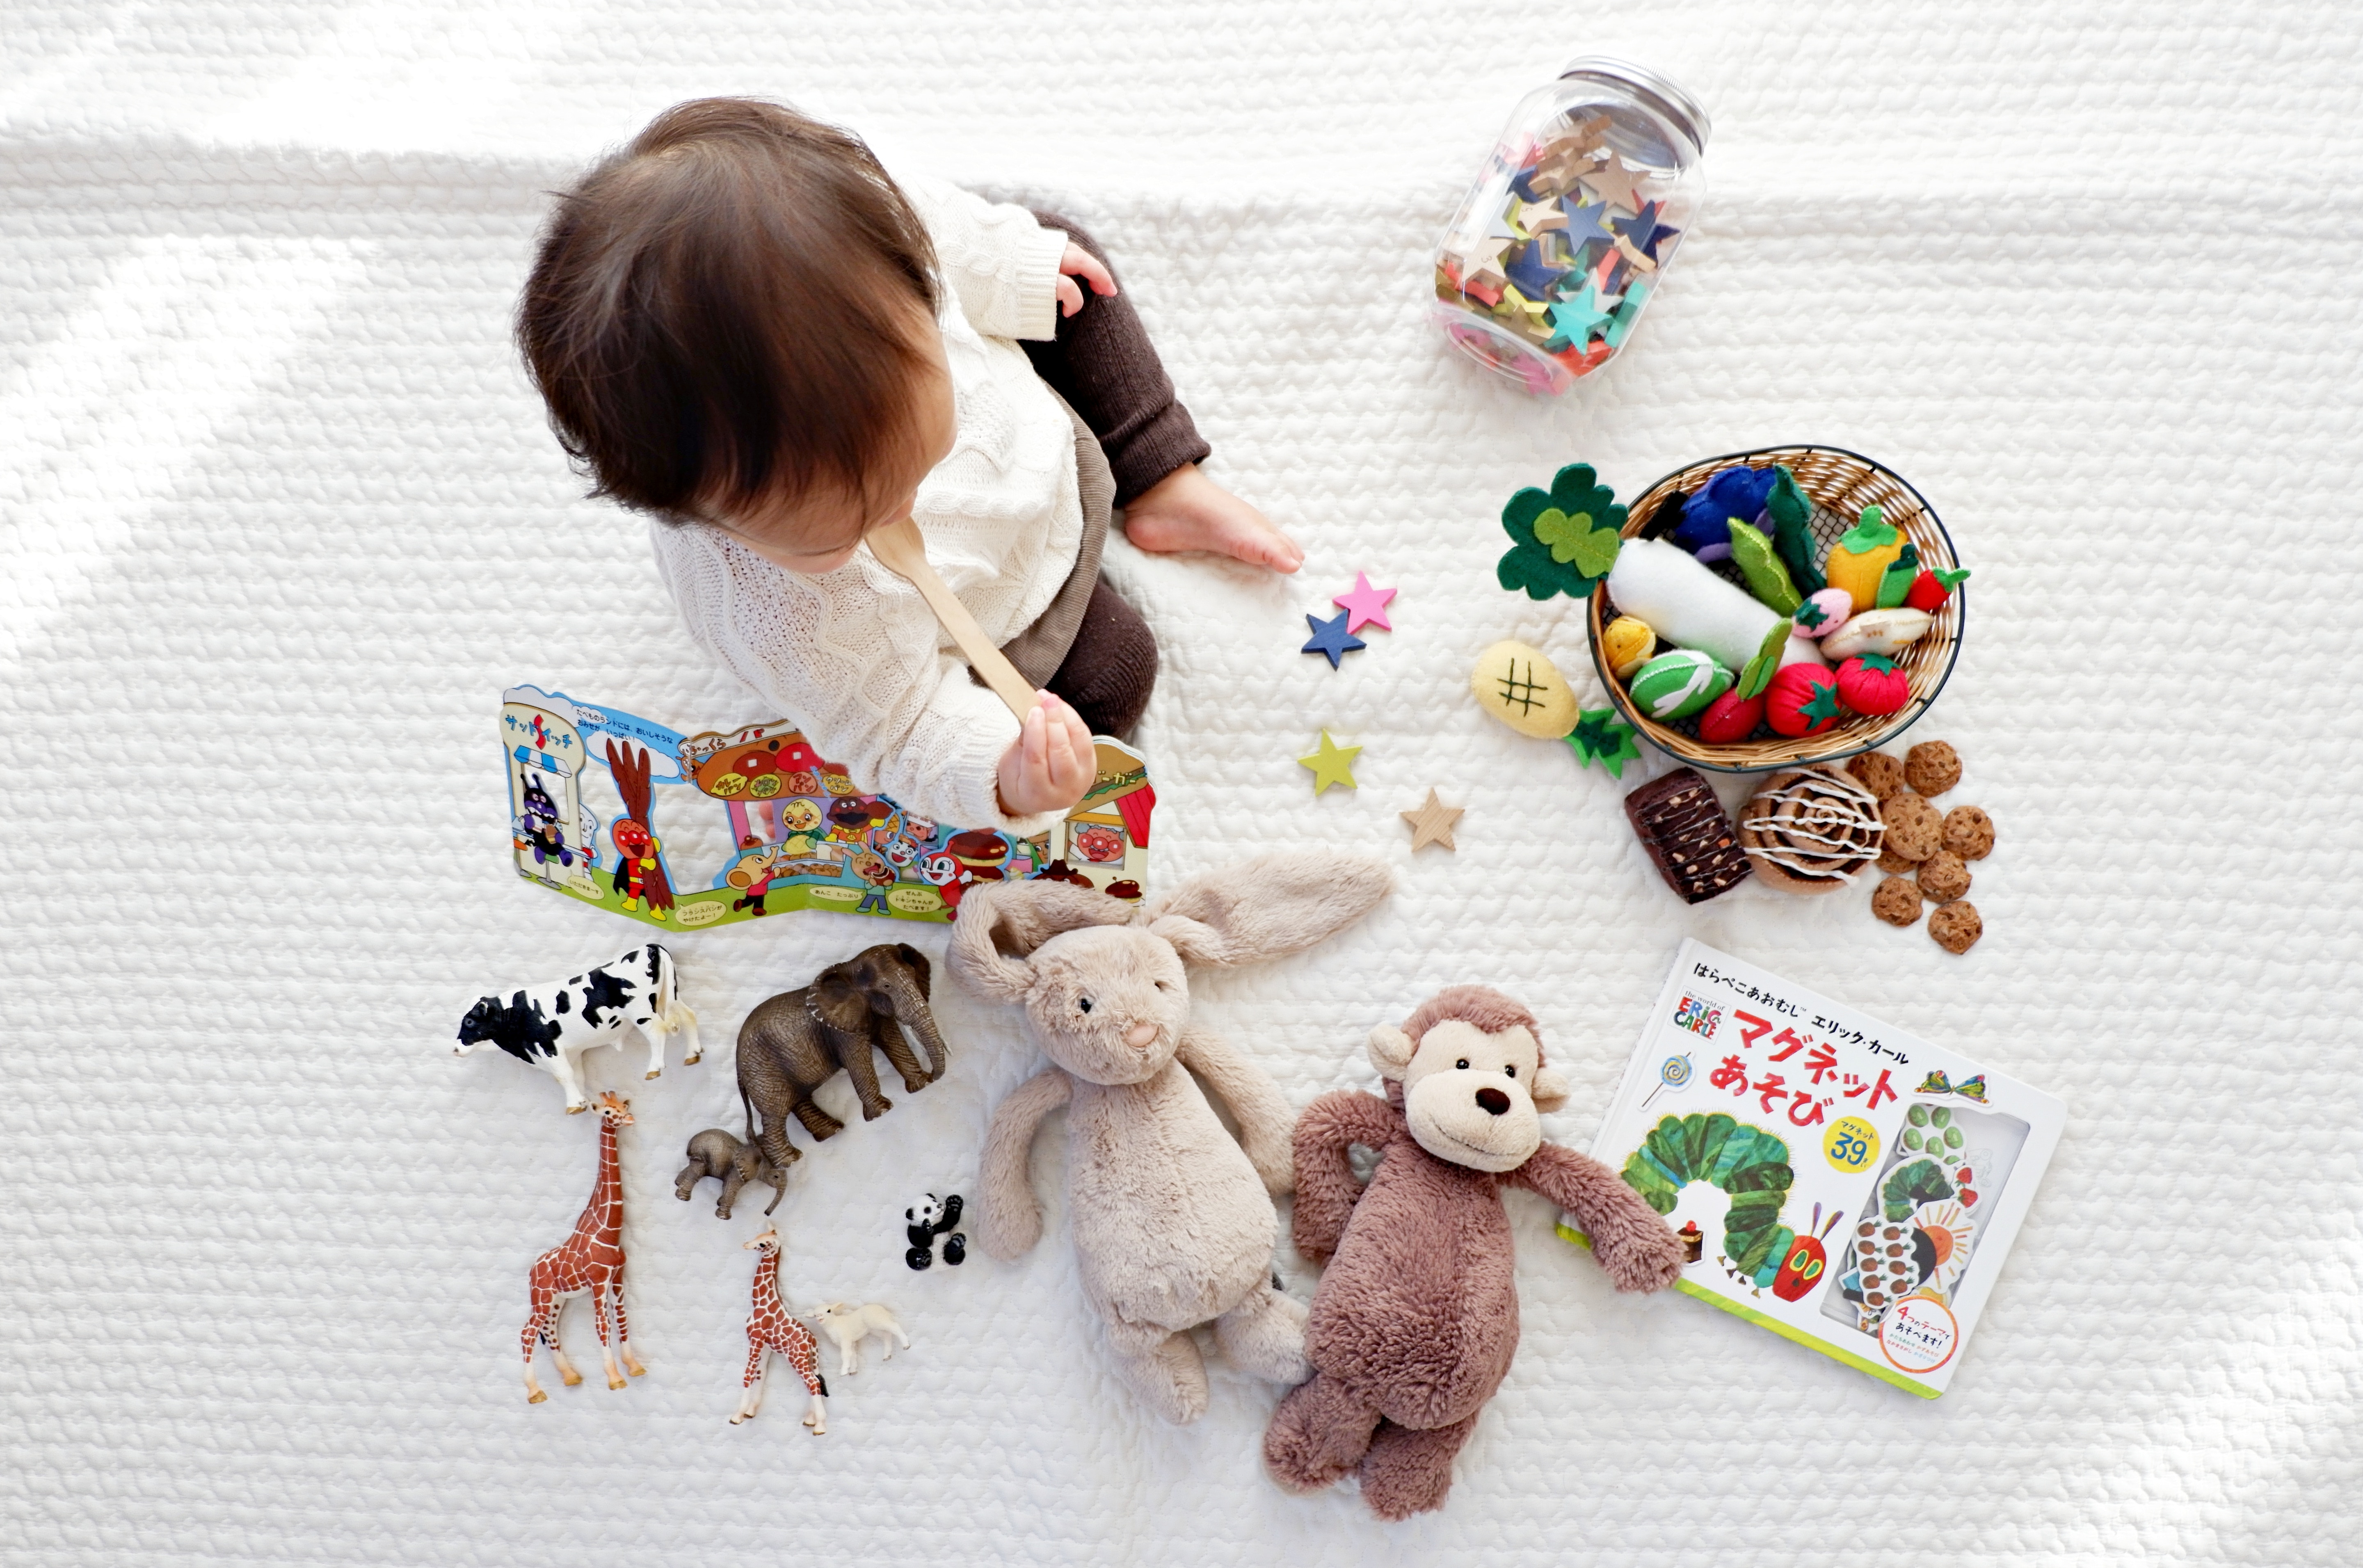 5 astuces pour ne pas se laisser envahir par les jouets de vos